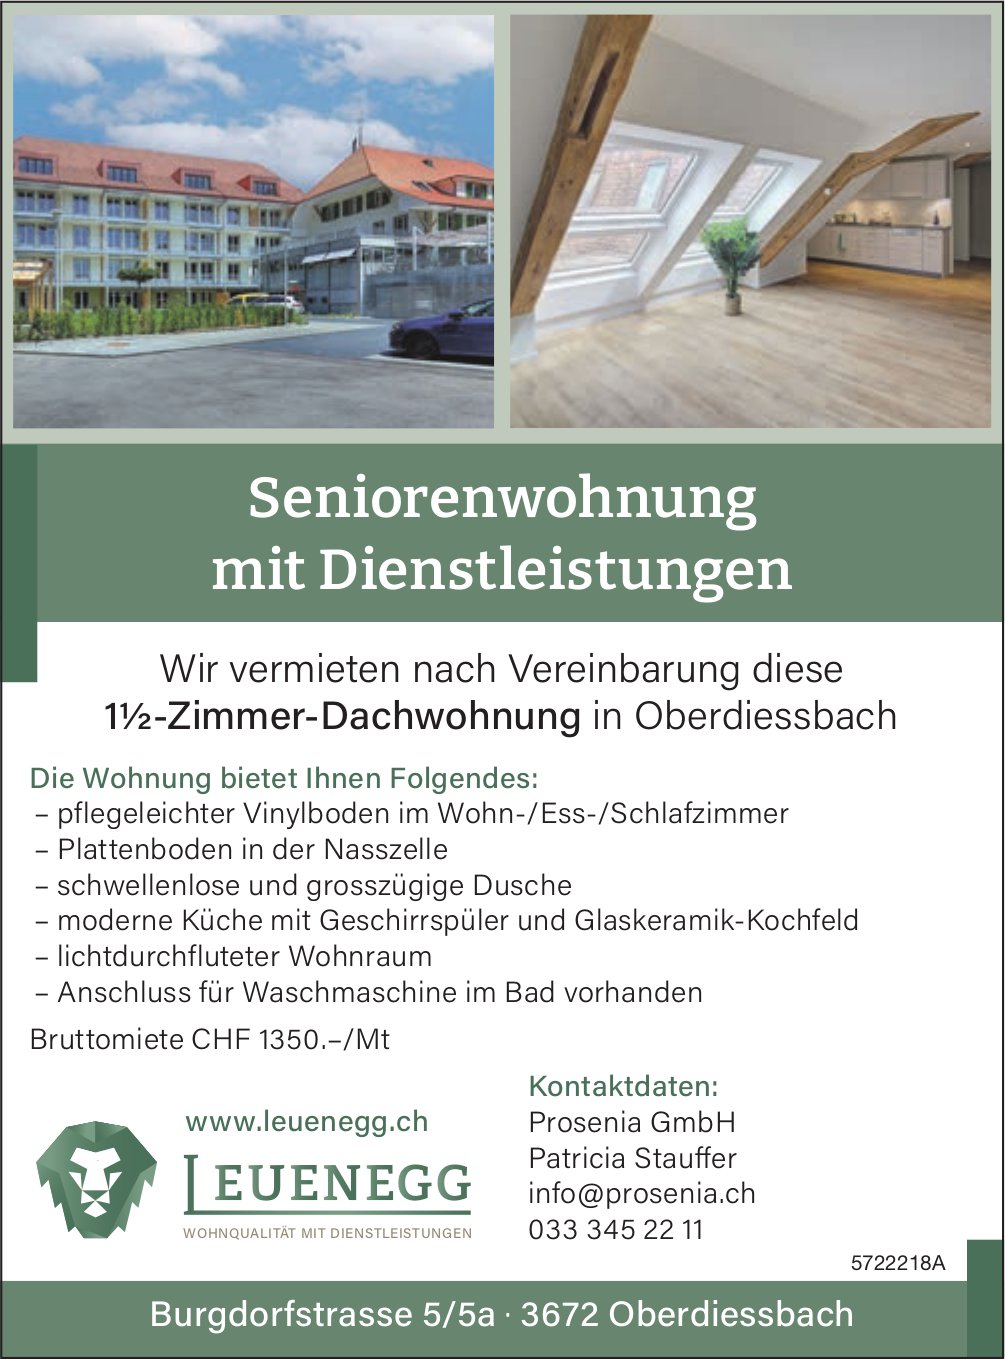 Seniorenwohnung mit Dienstleistungen, 1½-Zimmer-Dachwohnung, Oberdiessbach, zu vermieten